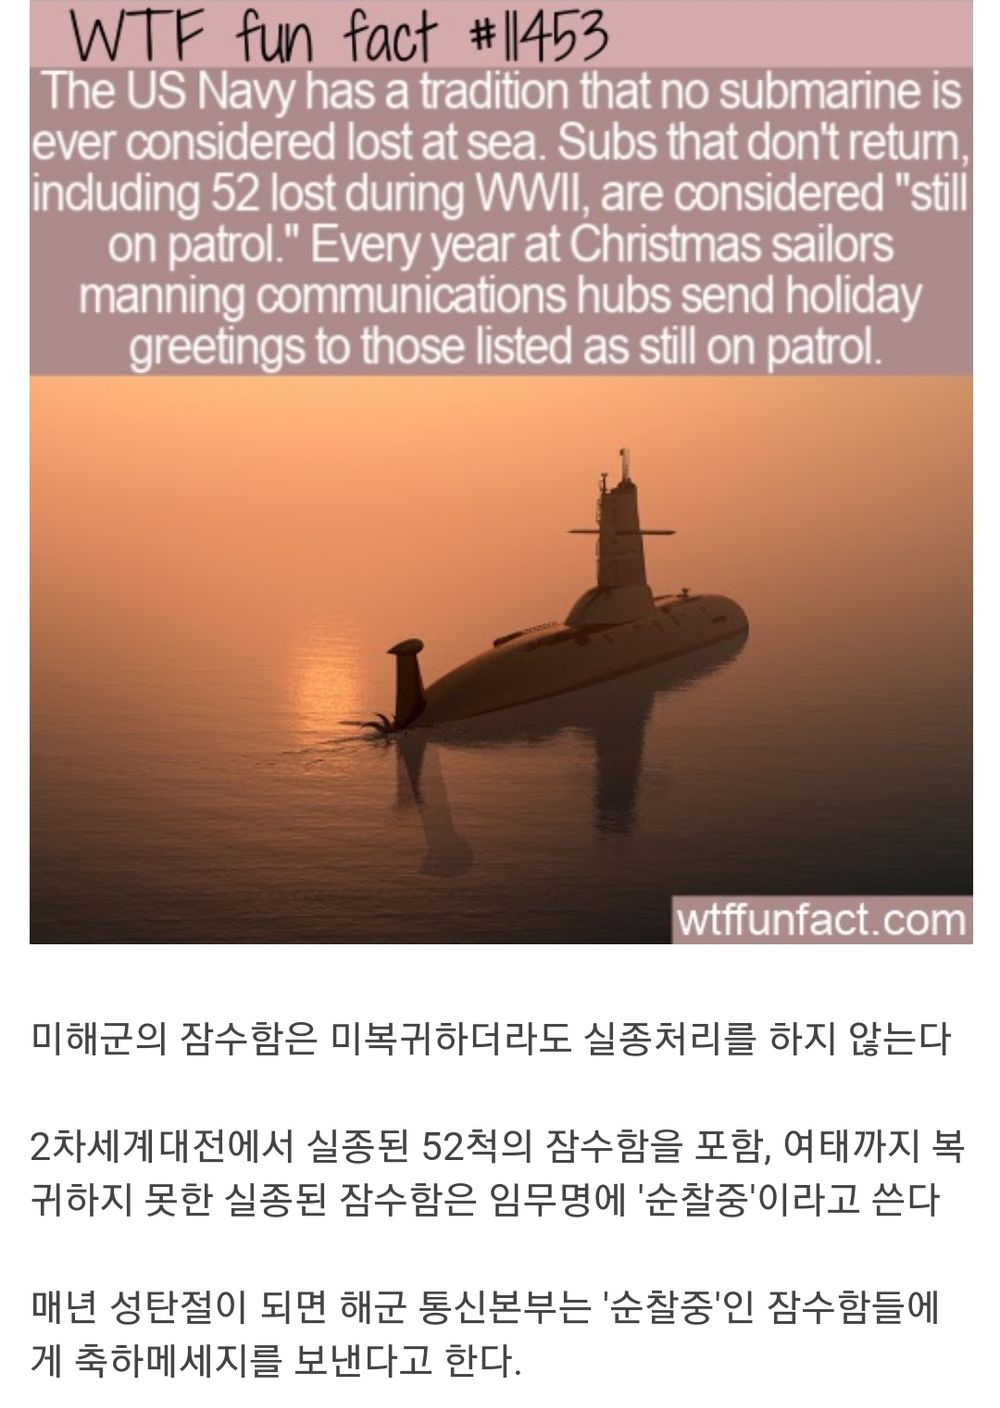 미복귀 잠수함에 대한 미 해군의 전통